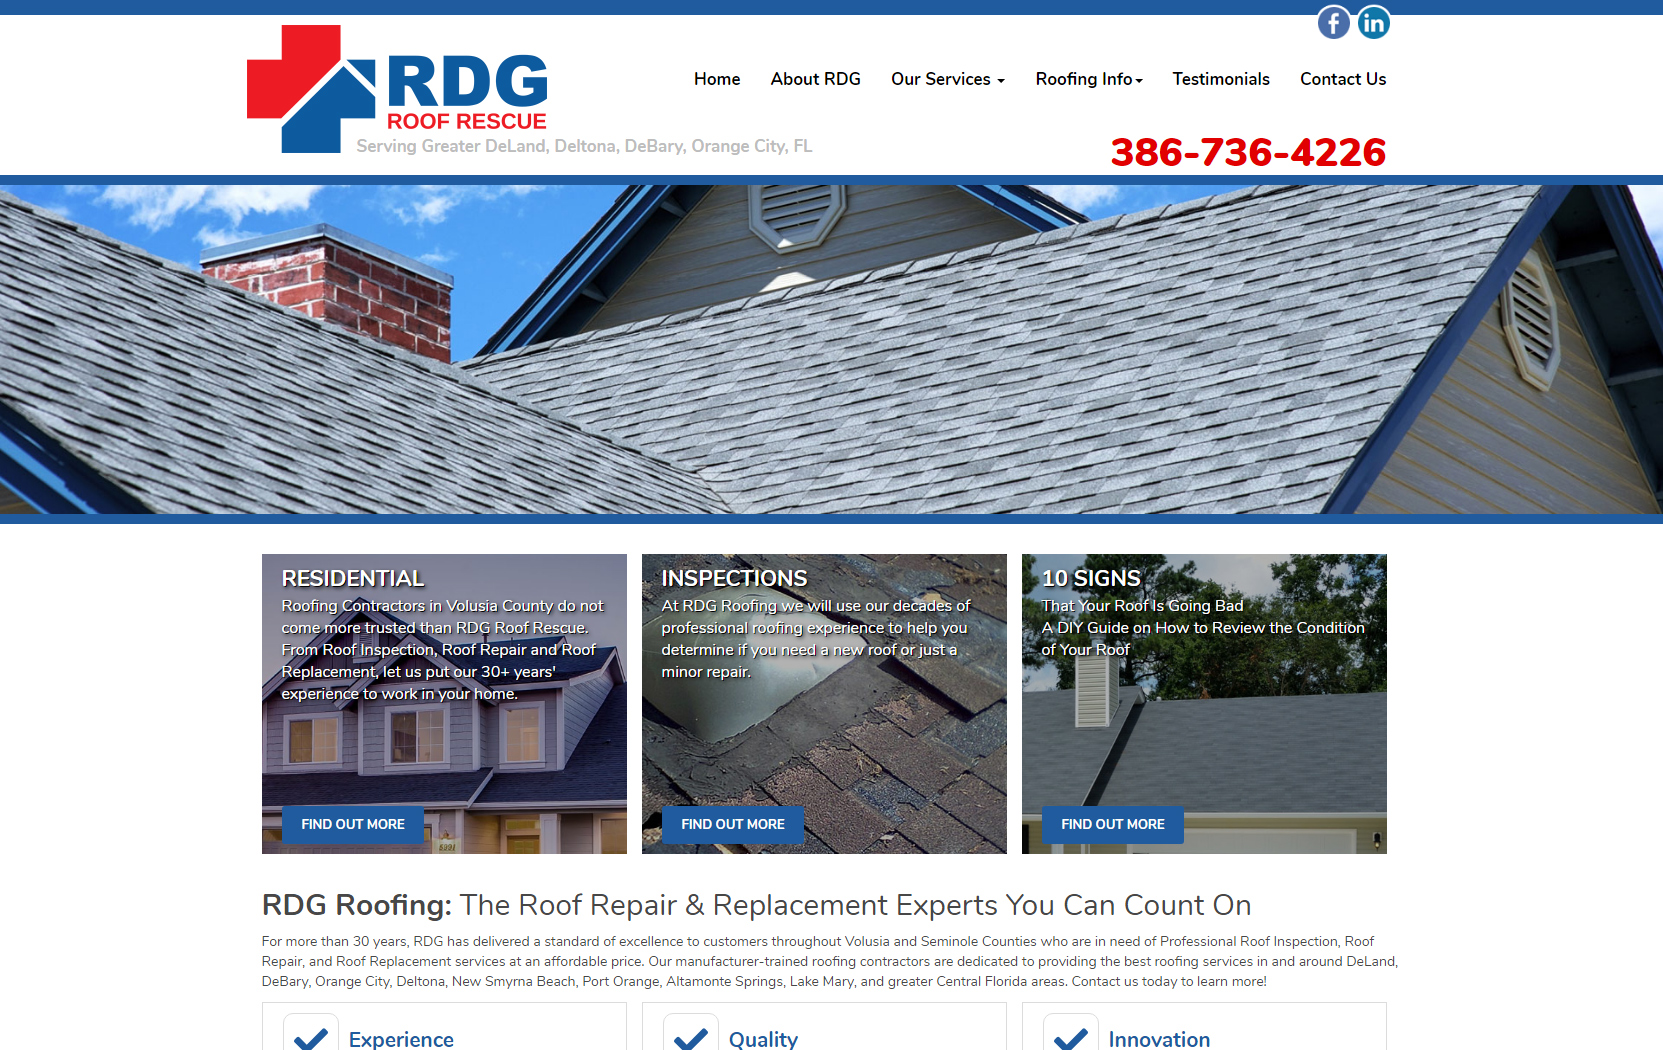 RDG Roof Rescue